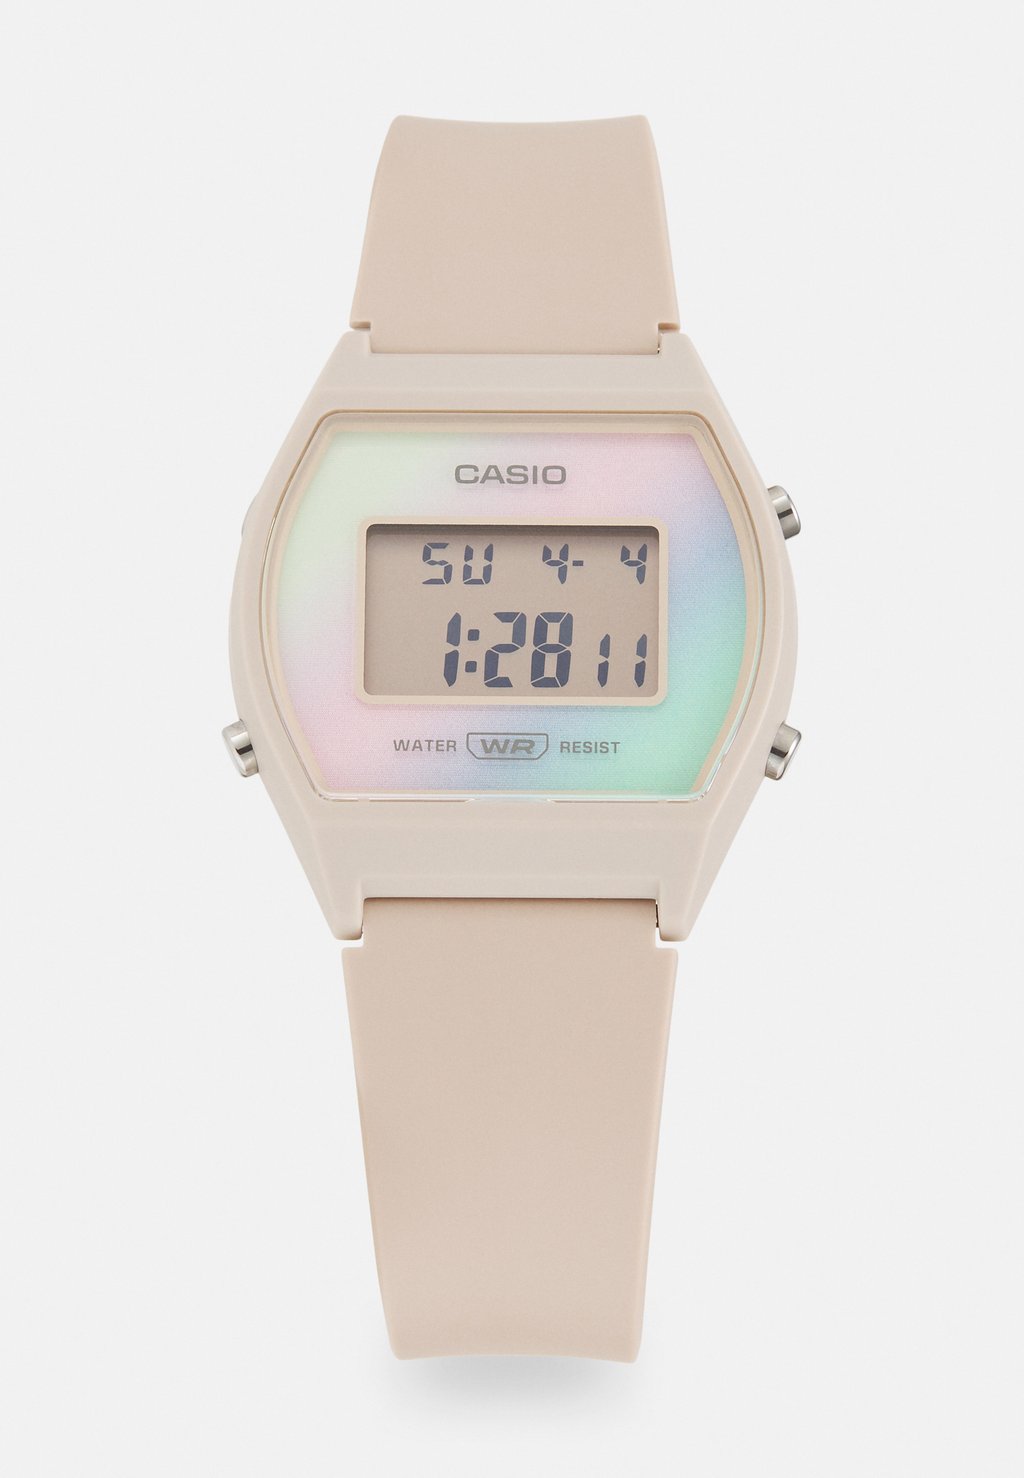 Цифровые часы LW-205H Casio, цвет beige